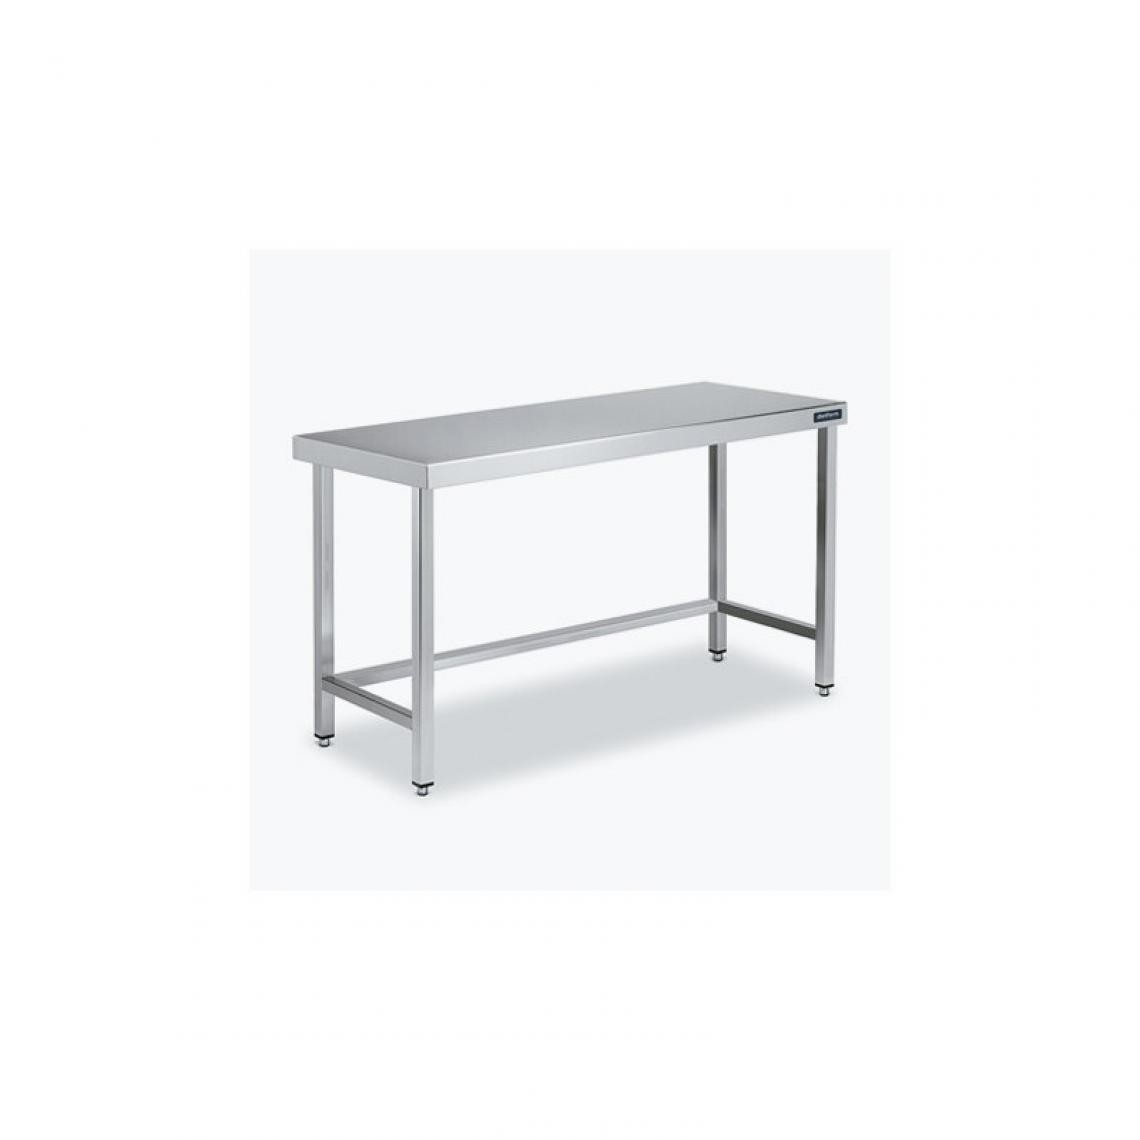 DISTFORM - Table Centrale 600x600X600 avec Renforts - Distform - Inox 18/101800x600x600mm - Tables à manger